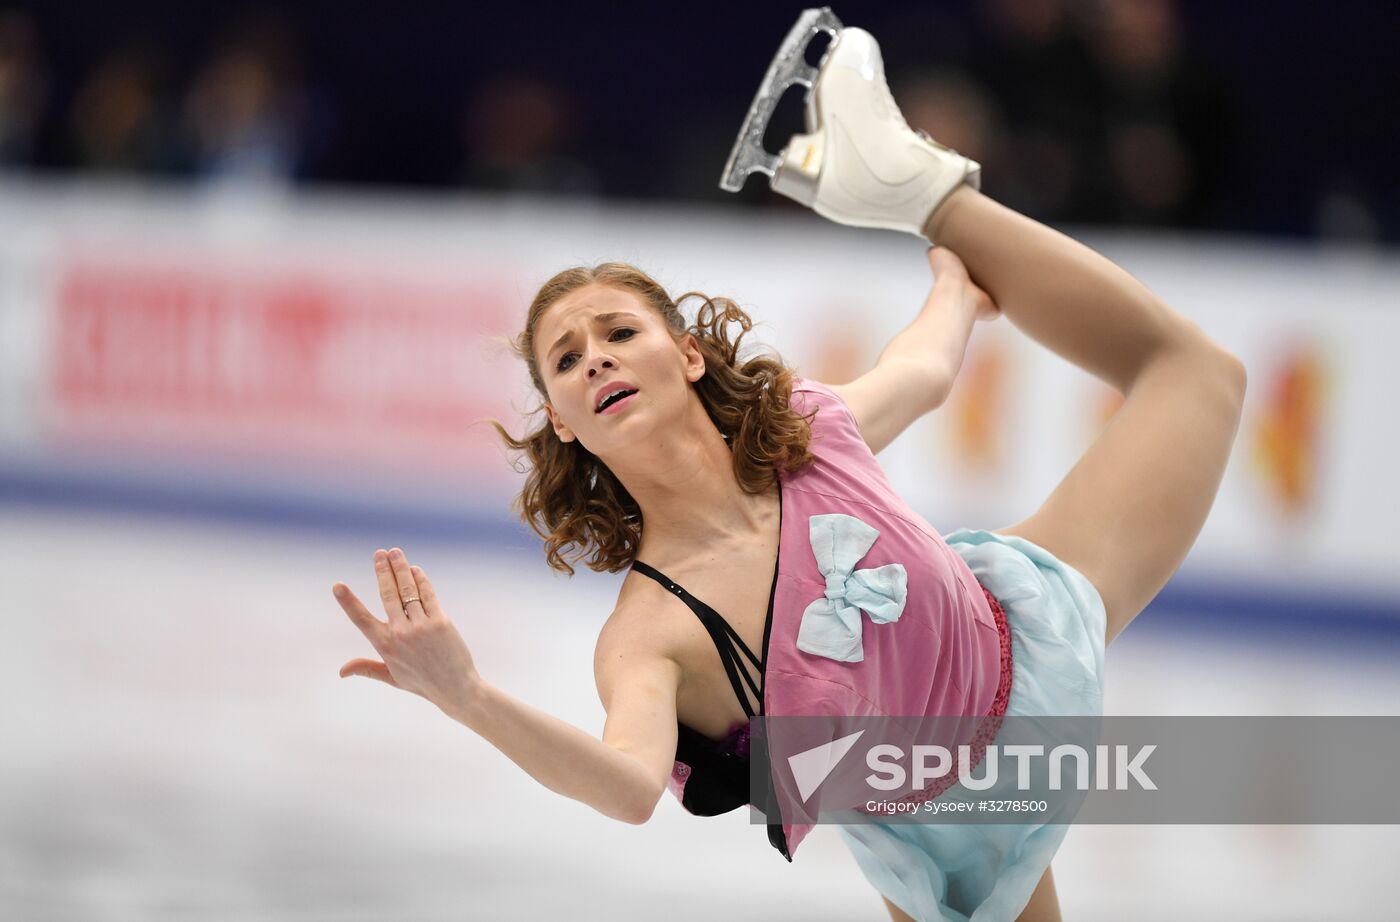 European Figure Skating Championships. Women's free skating